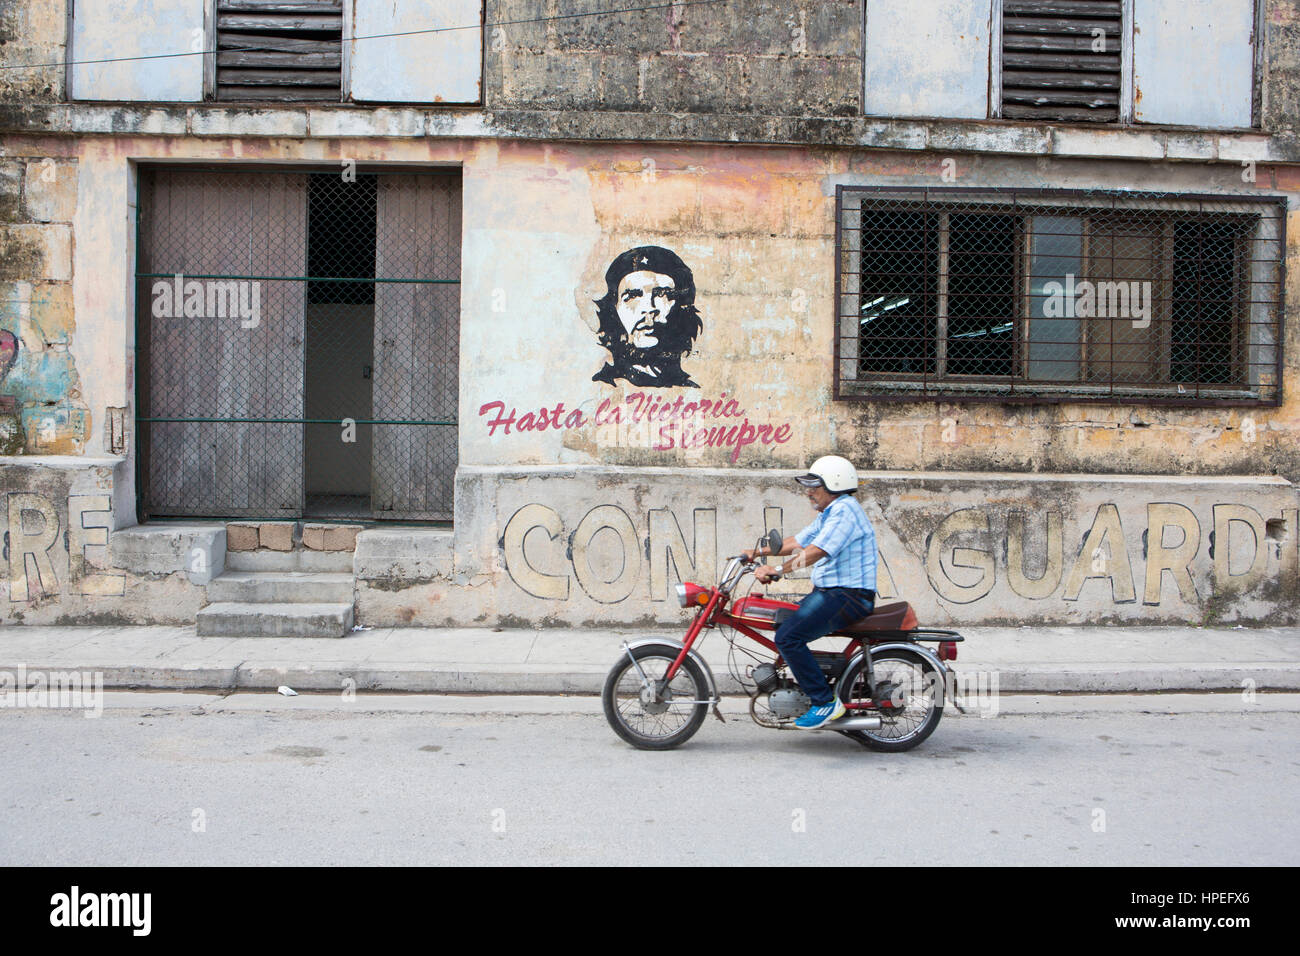 Portrait d'homme transgenre Juani Santos (64) équitation sa moto à l'avant du Che Guevara murale dans sa ville natale de Matanzas, Cuba. Juani a été bo Banque D'Images